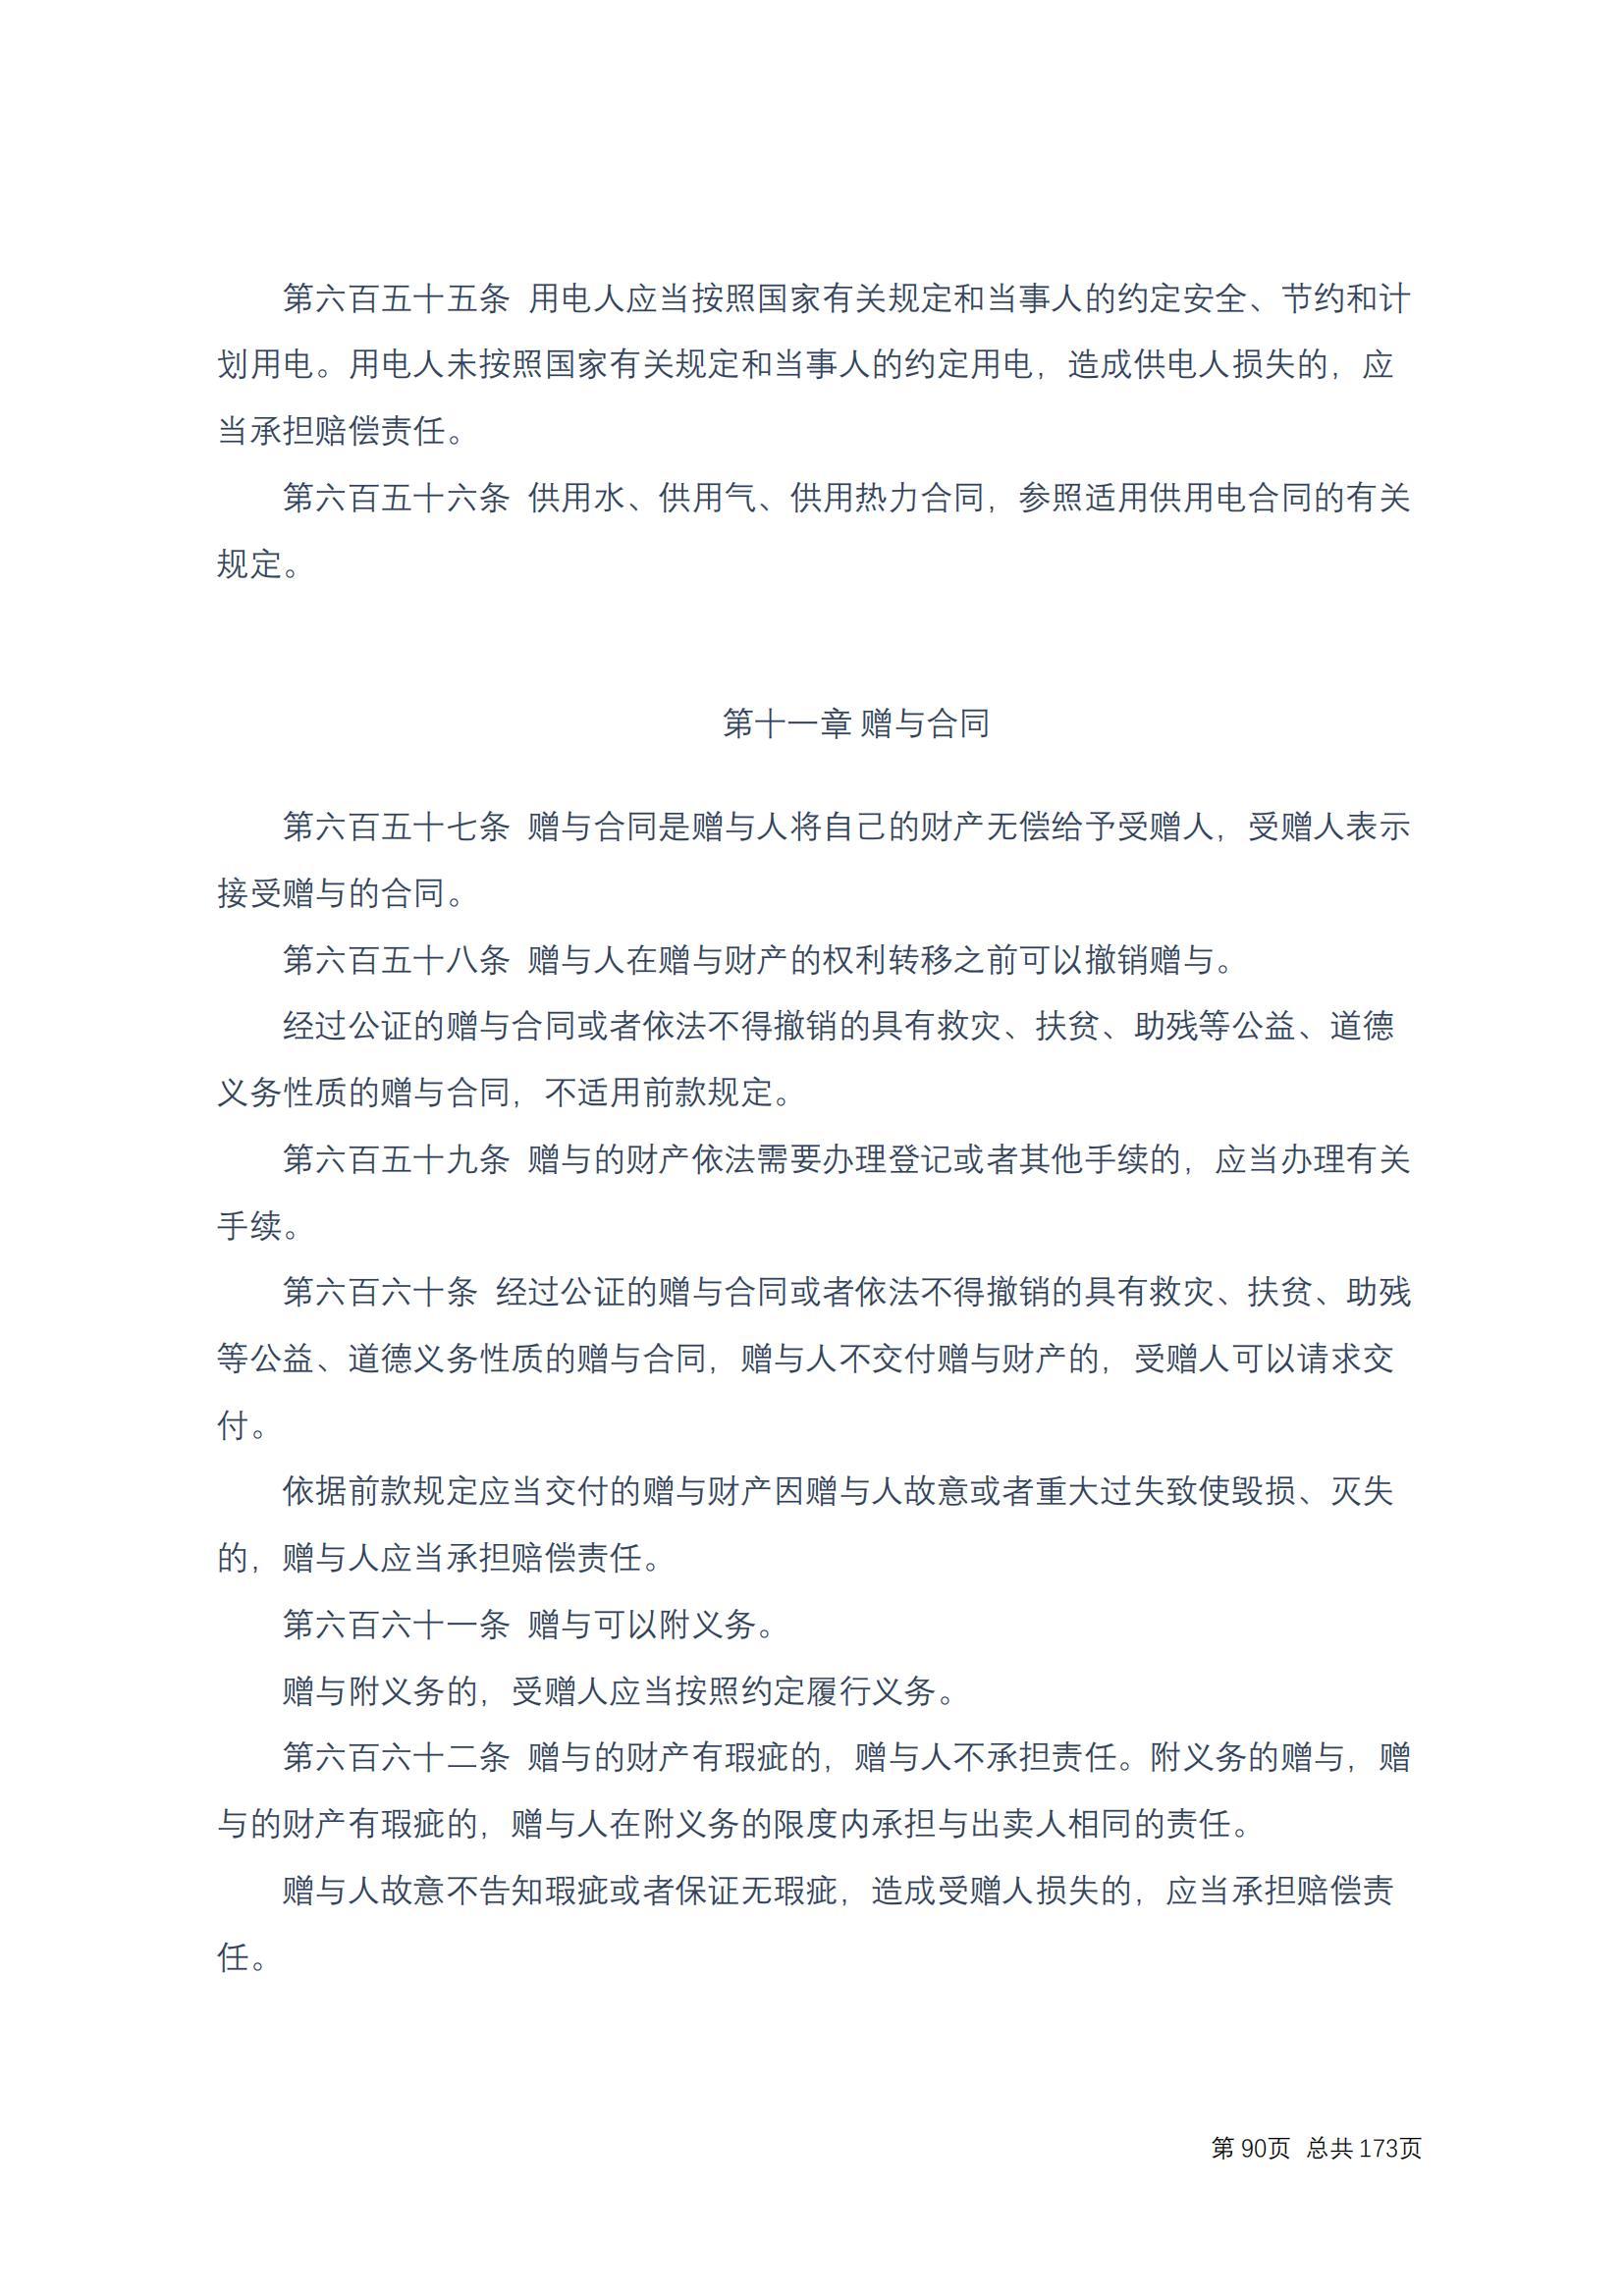 中华人民共和国民法典 修改过_89